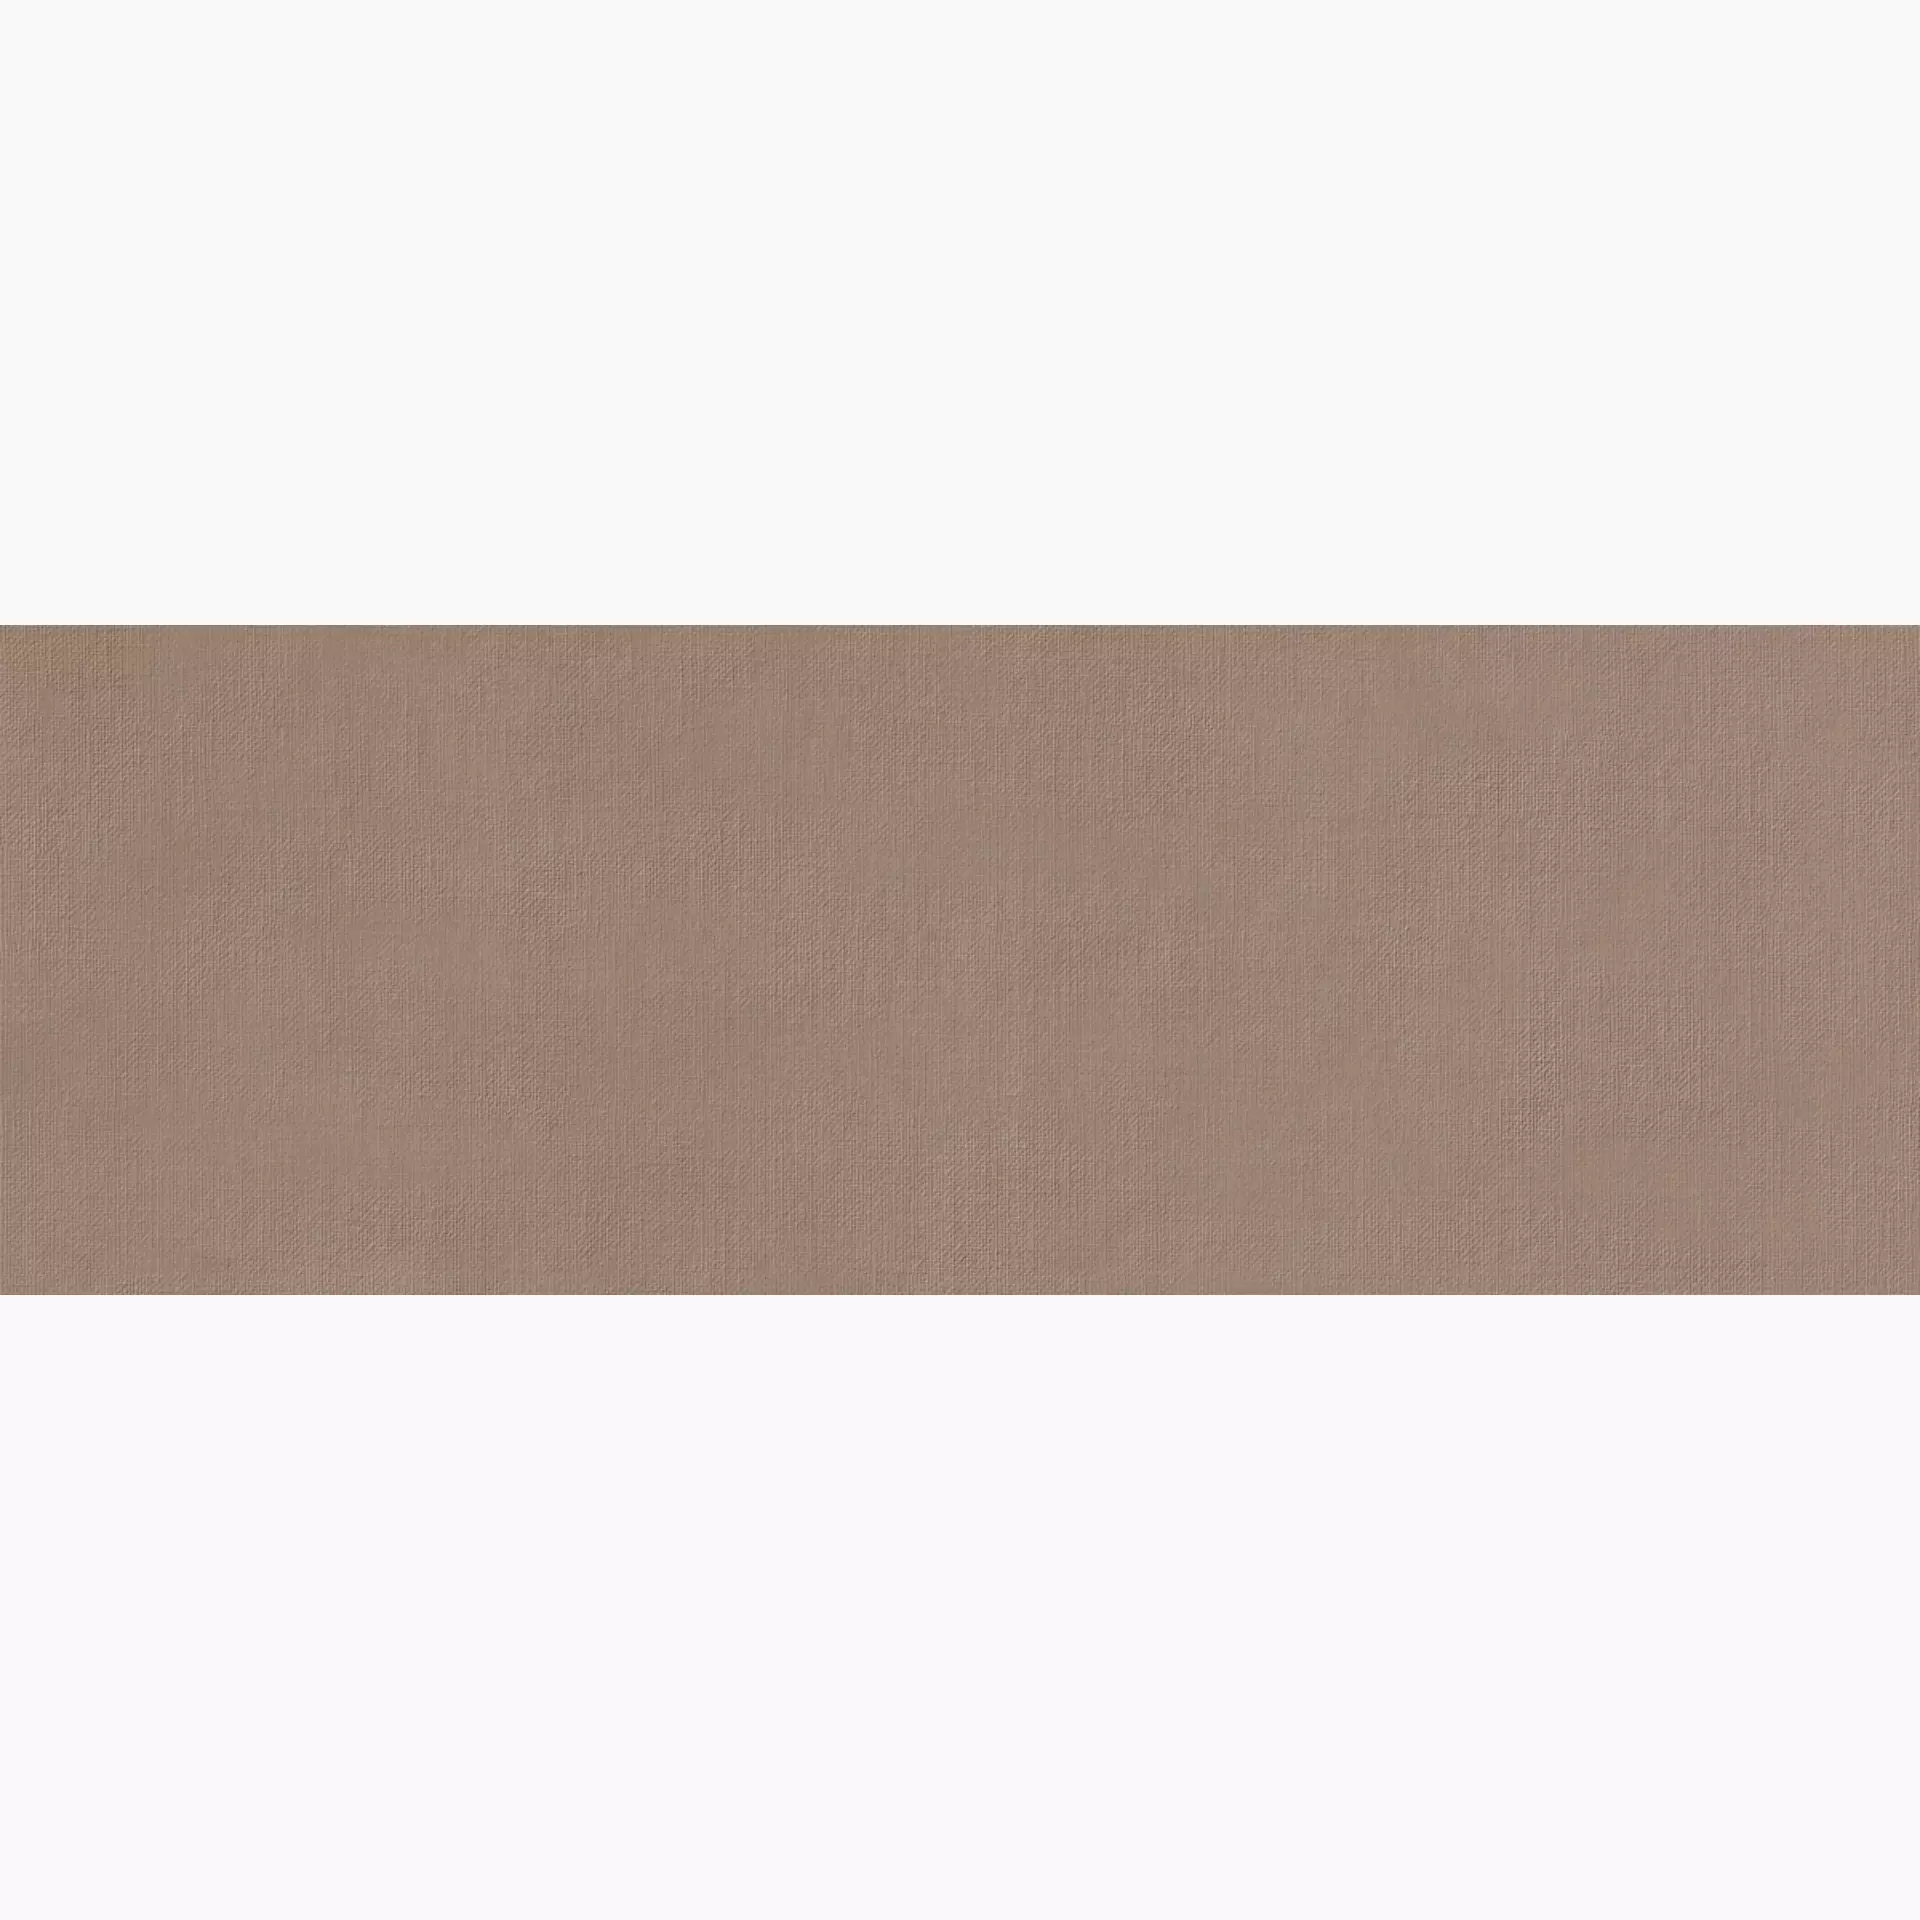 Wandfliese Marazzi Fabric Yute Naturale – Matt Yute MQUU matt natur 40x120cm rektifiziert 6mm